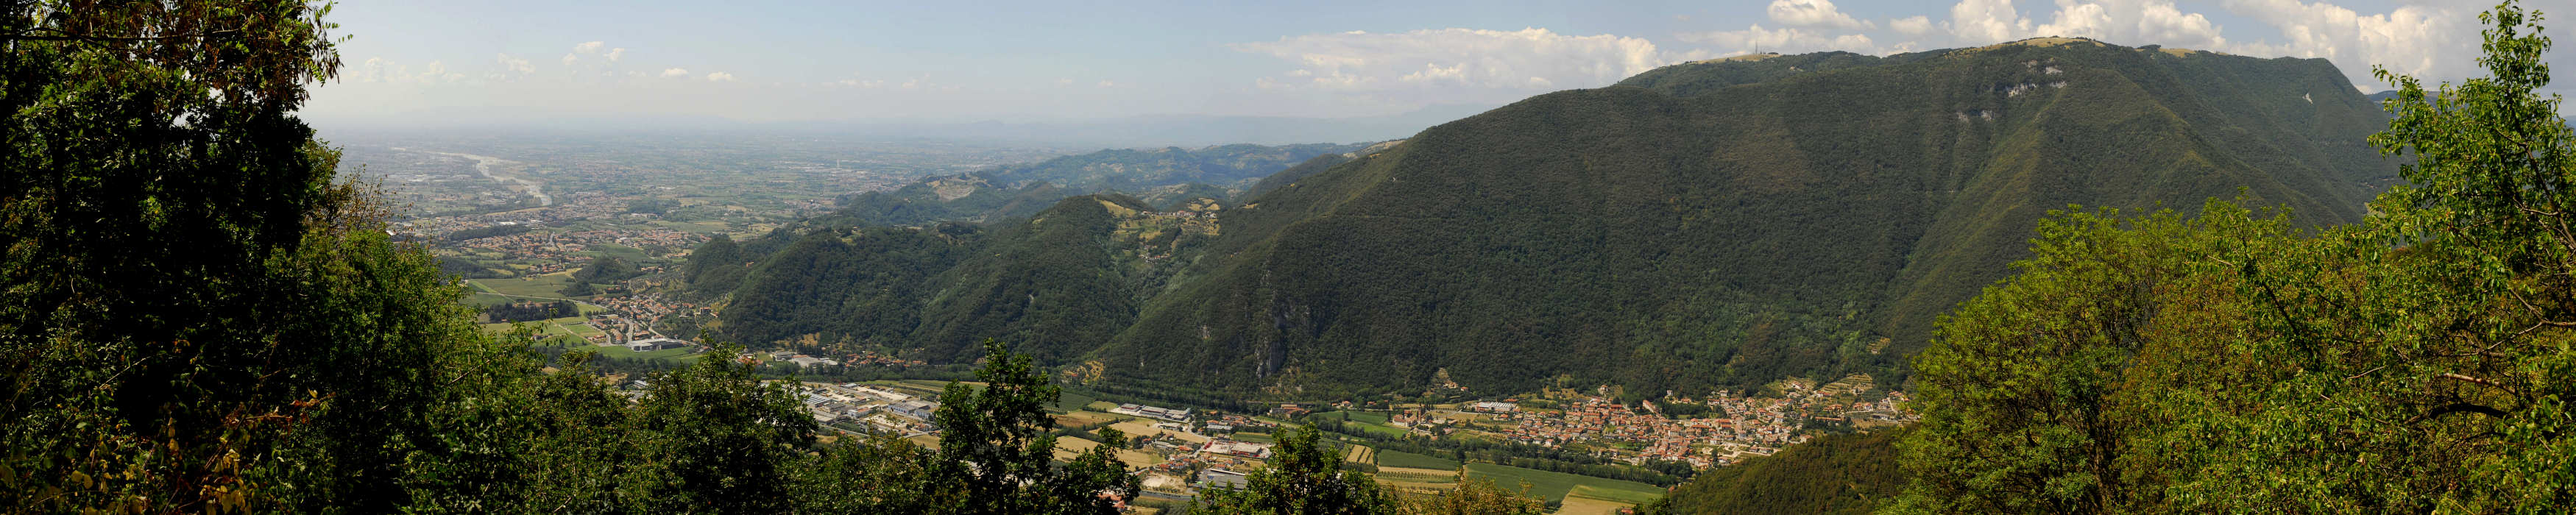 Monte Grappa, loc. Costalunga di Romano d'Ezzelino - fotografia panoramica